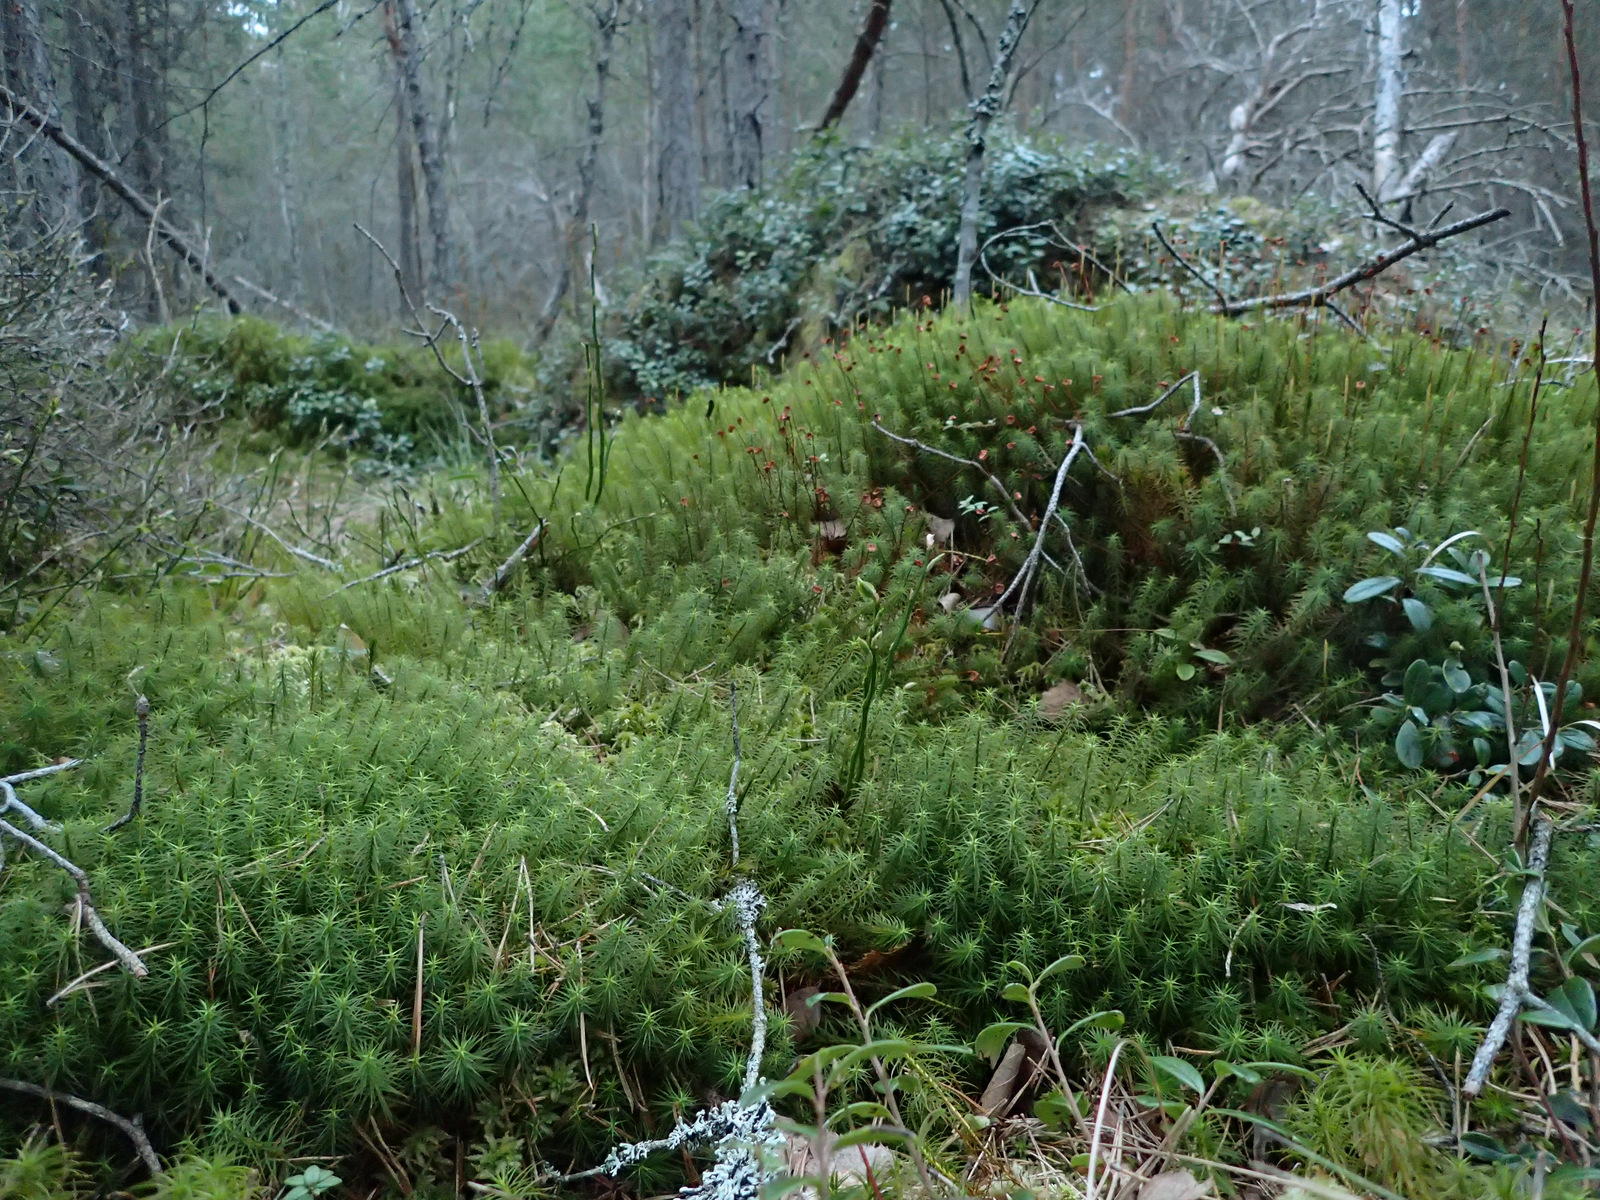 Grön mossa växer på marken bland träden. Foto